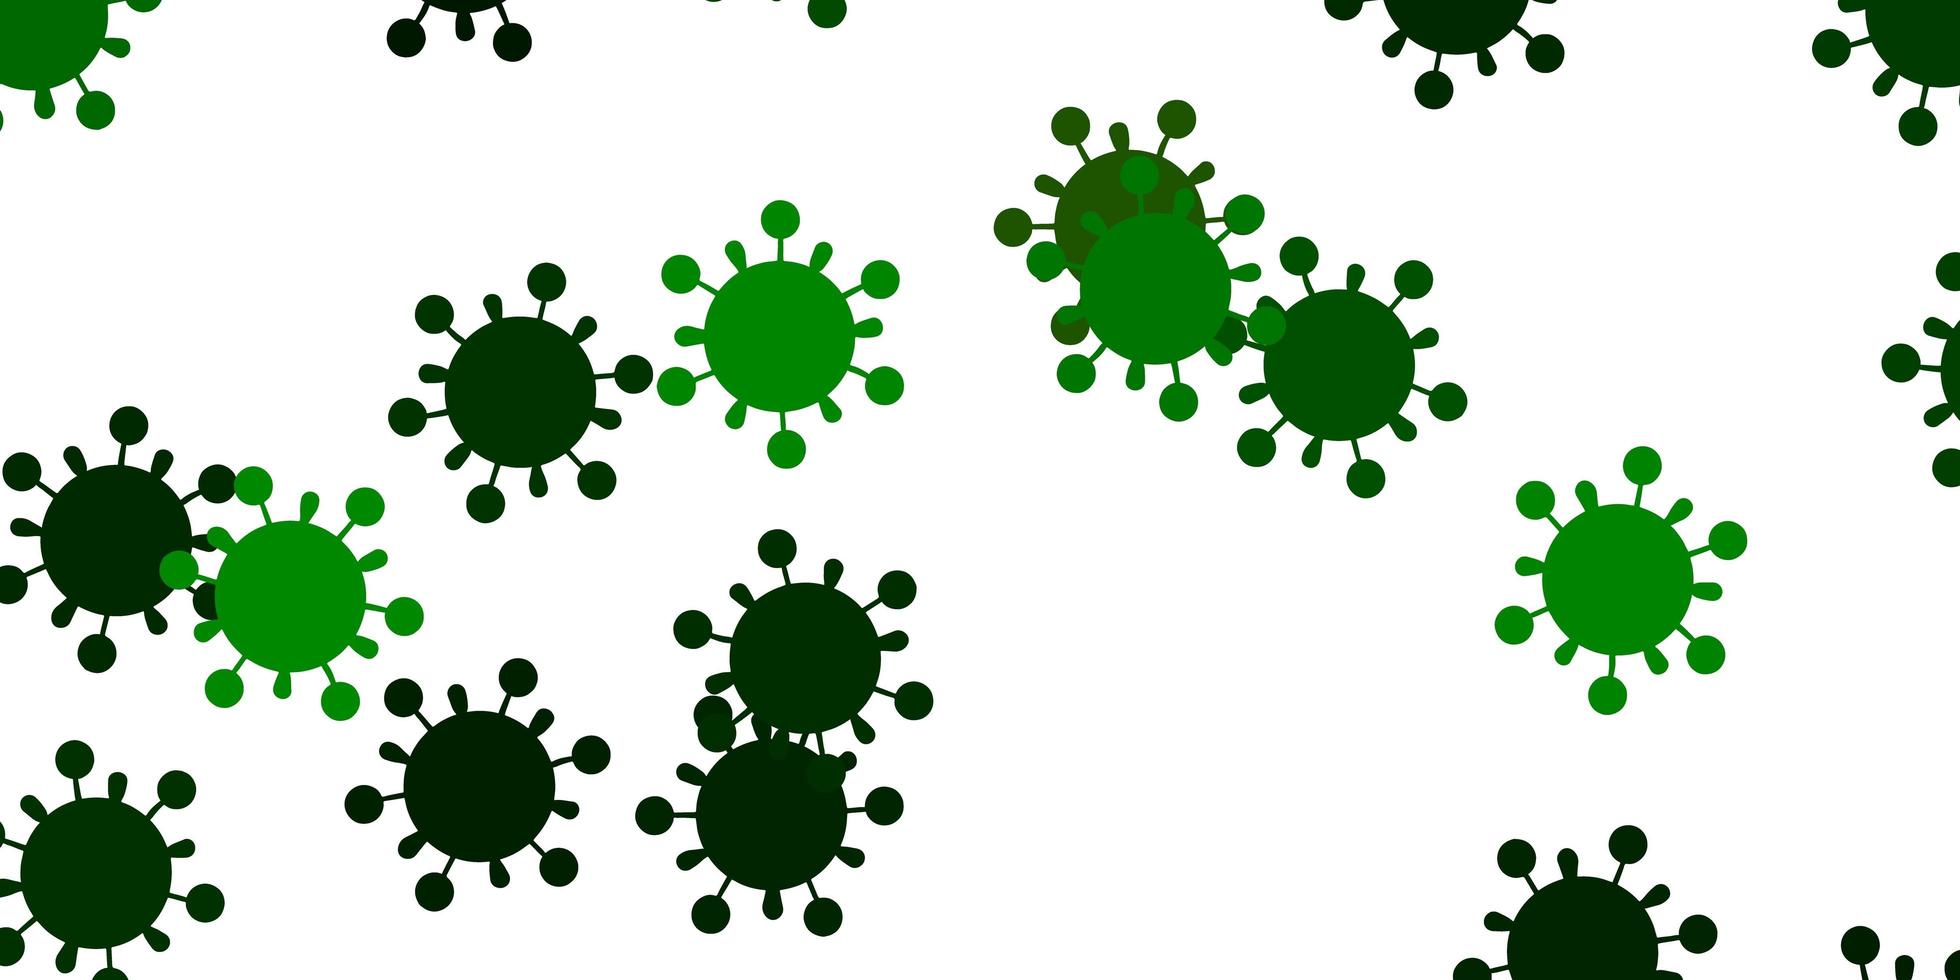 ljusgrön gul vektormall med influensatecken vektor